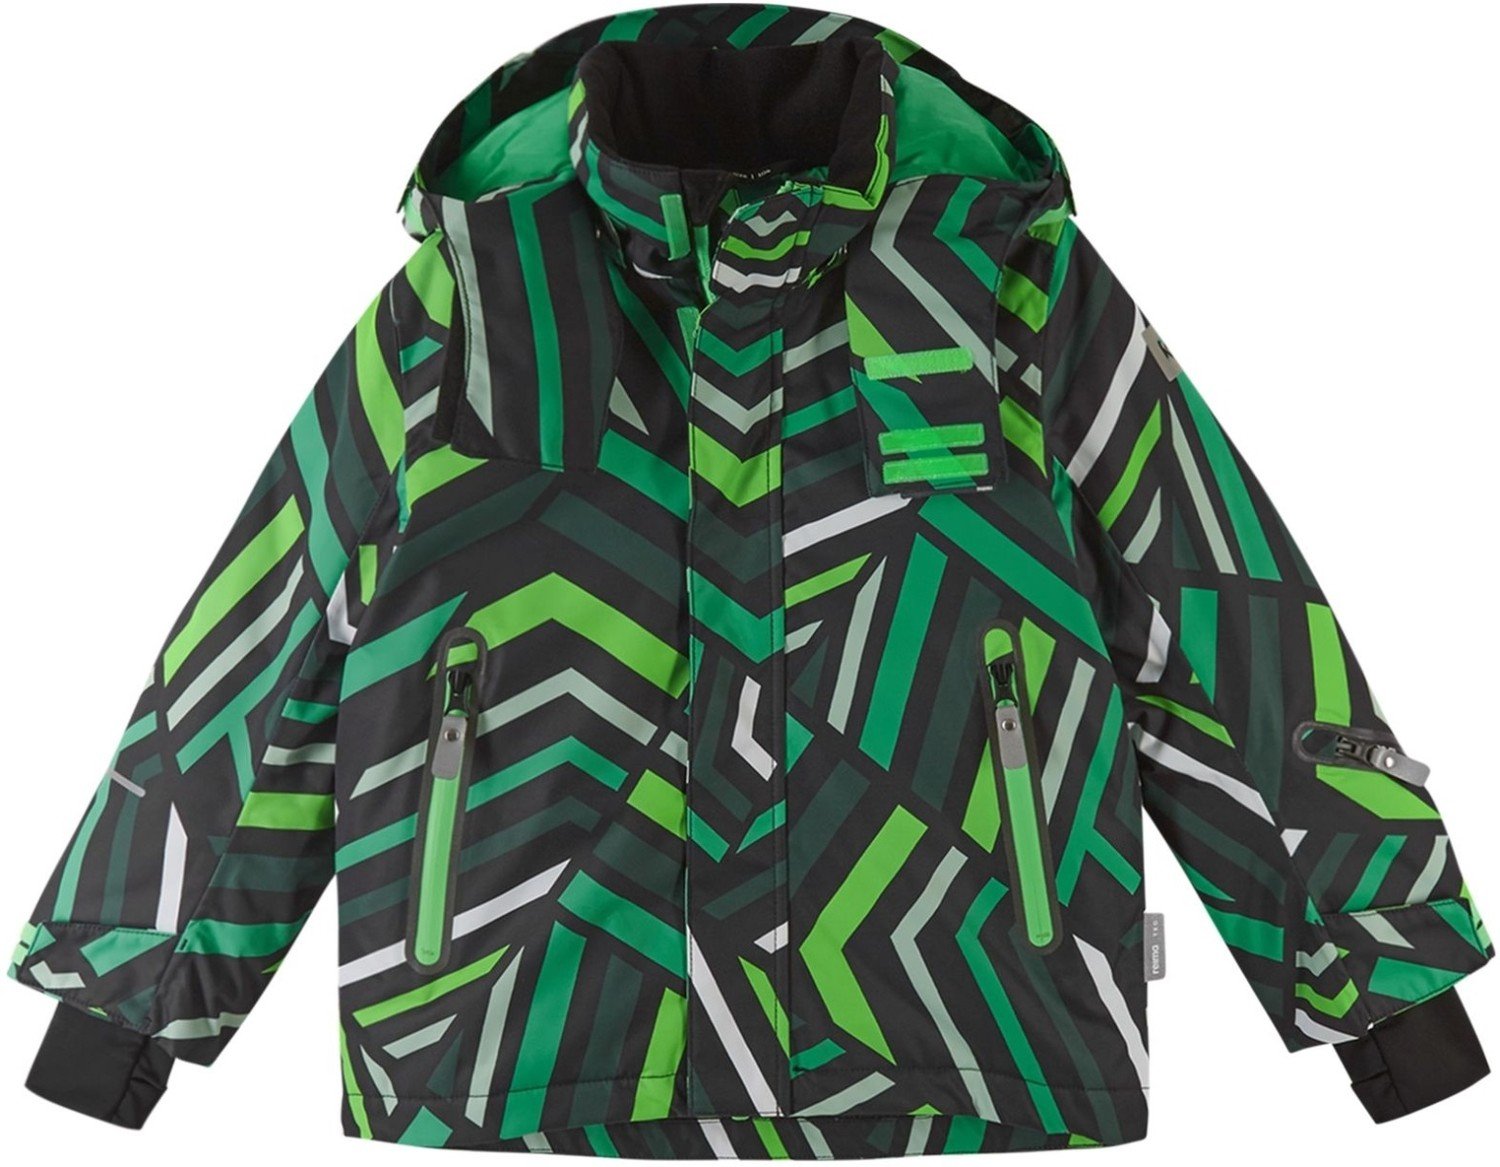 Chlapecká zimní lyžařská bunda reima kairala černá/zelená 128